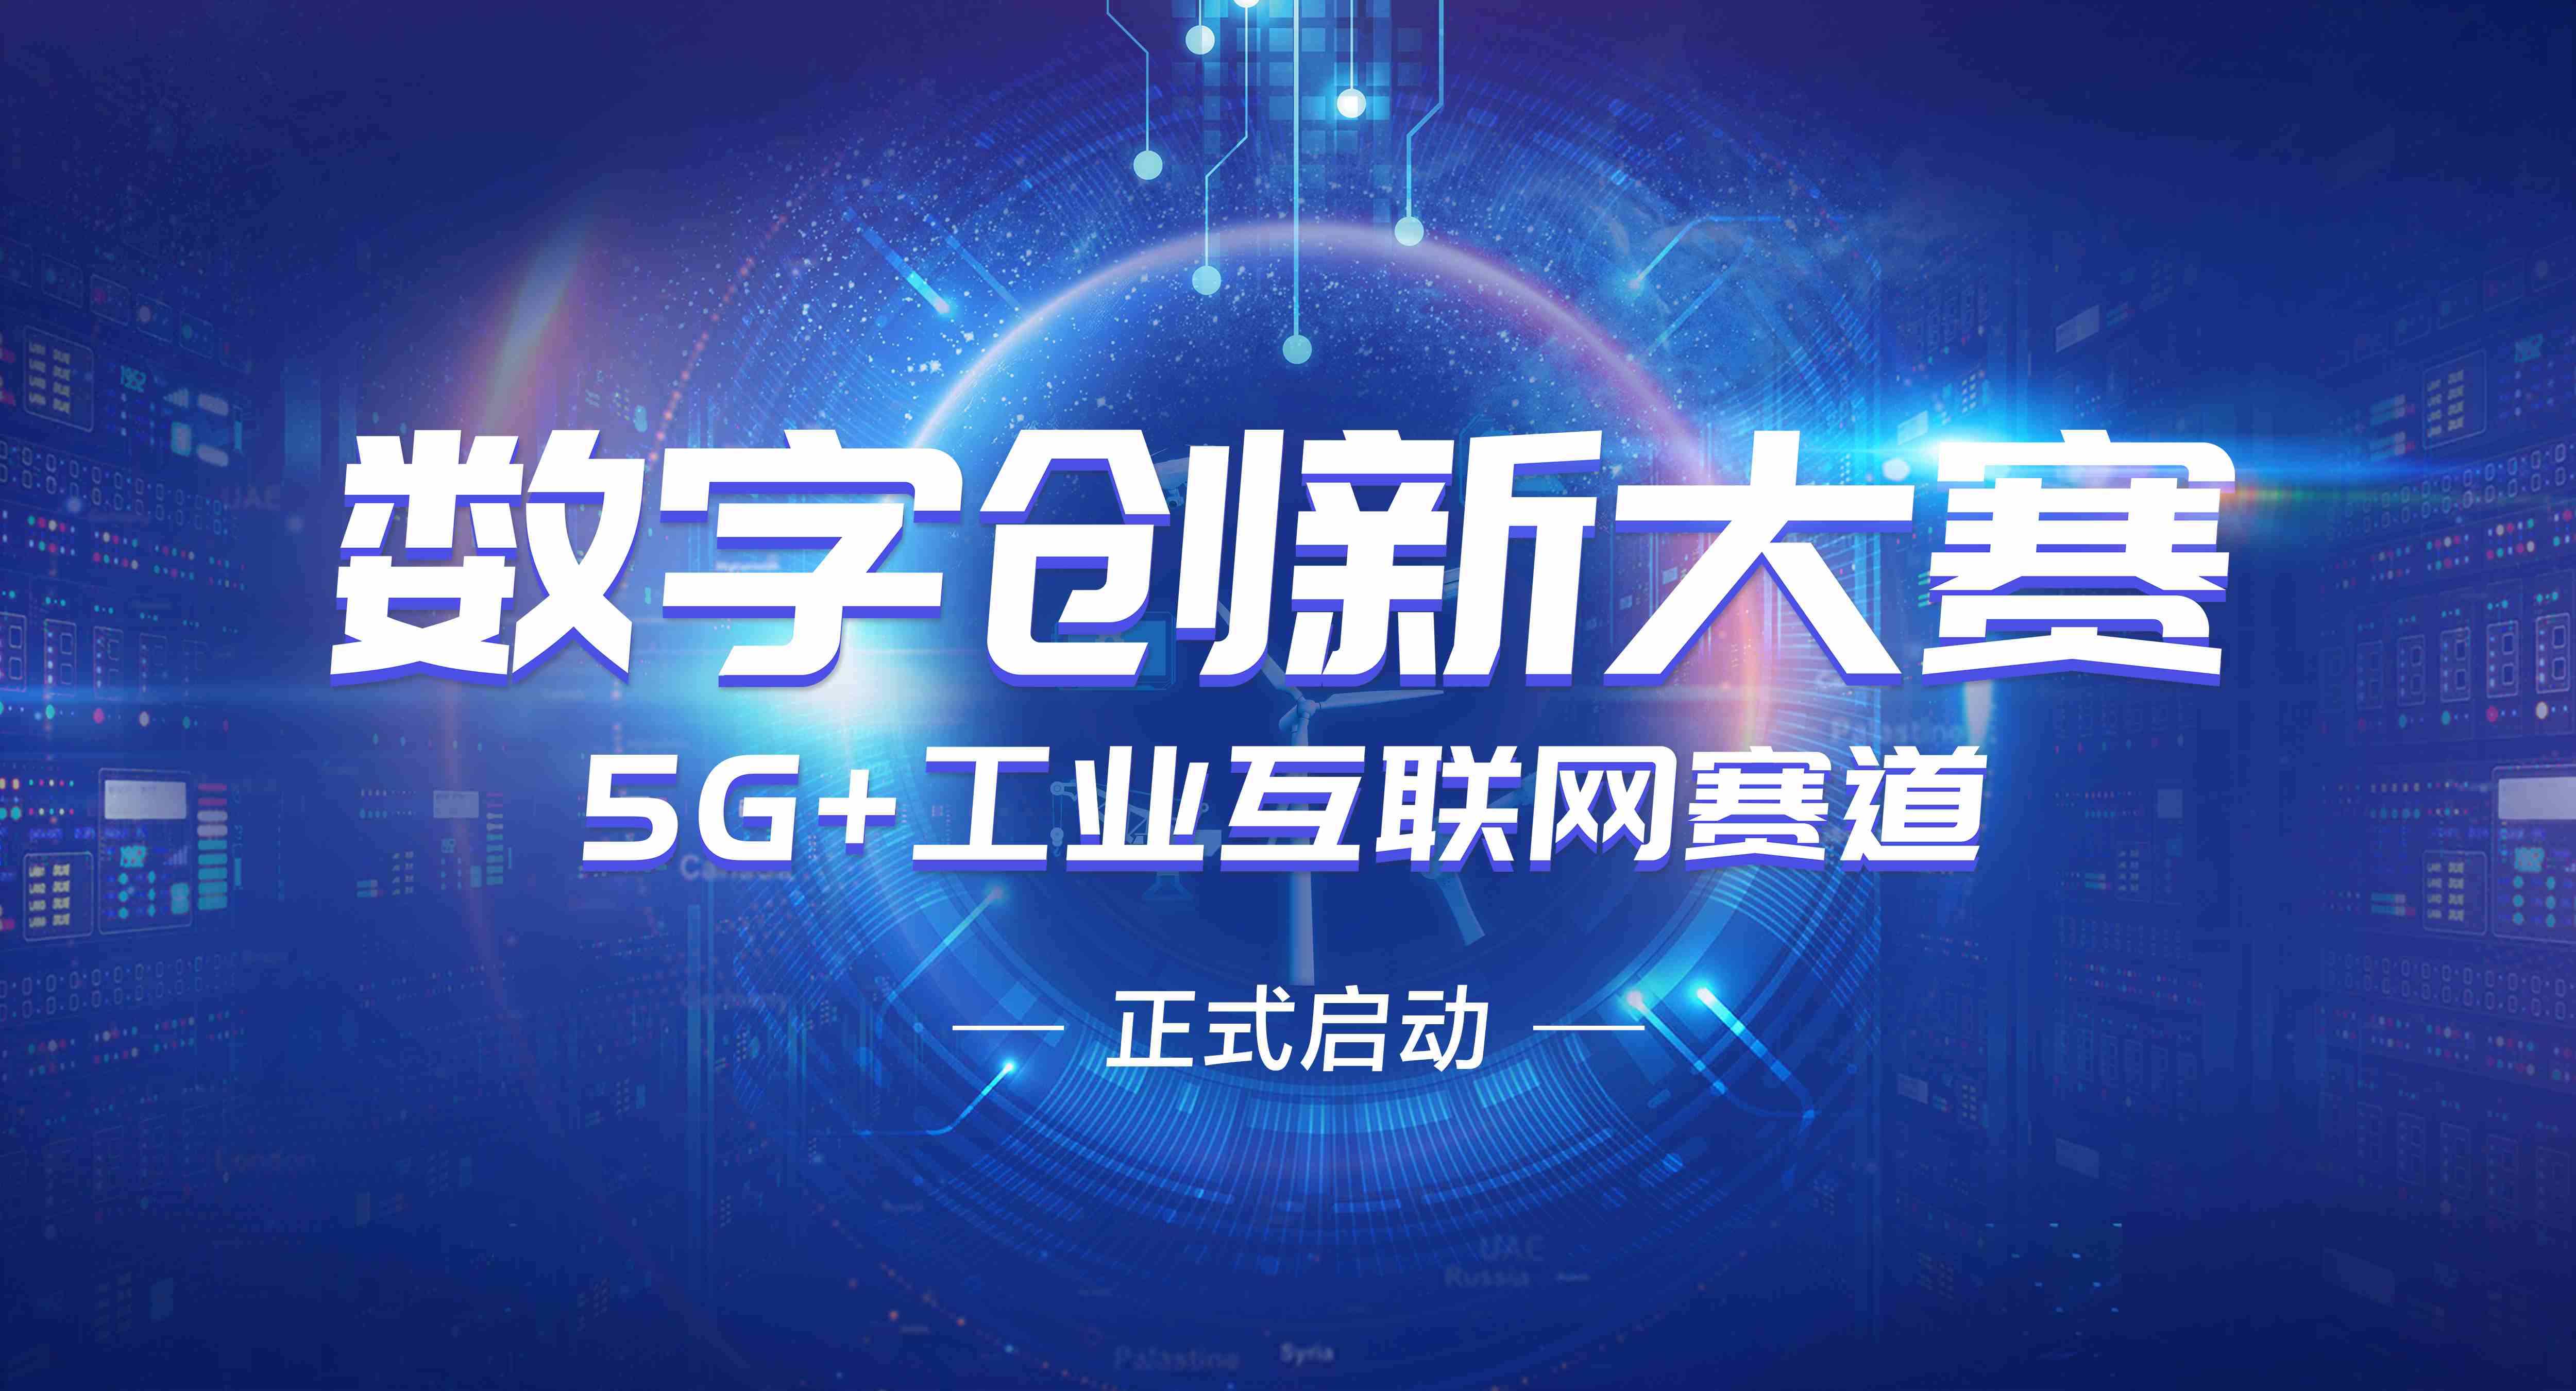 中国—东盟数字创新大赛 5G+工业互联网赛道大赛正式开启